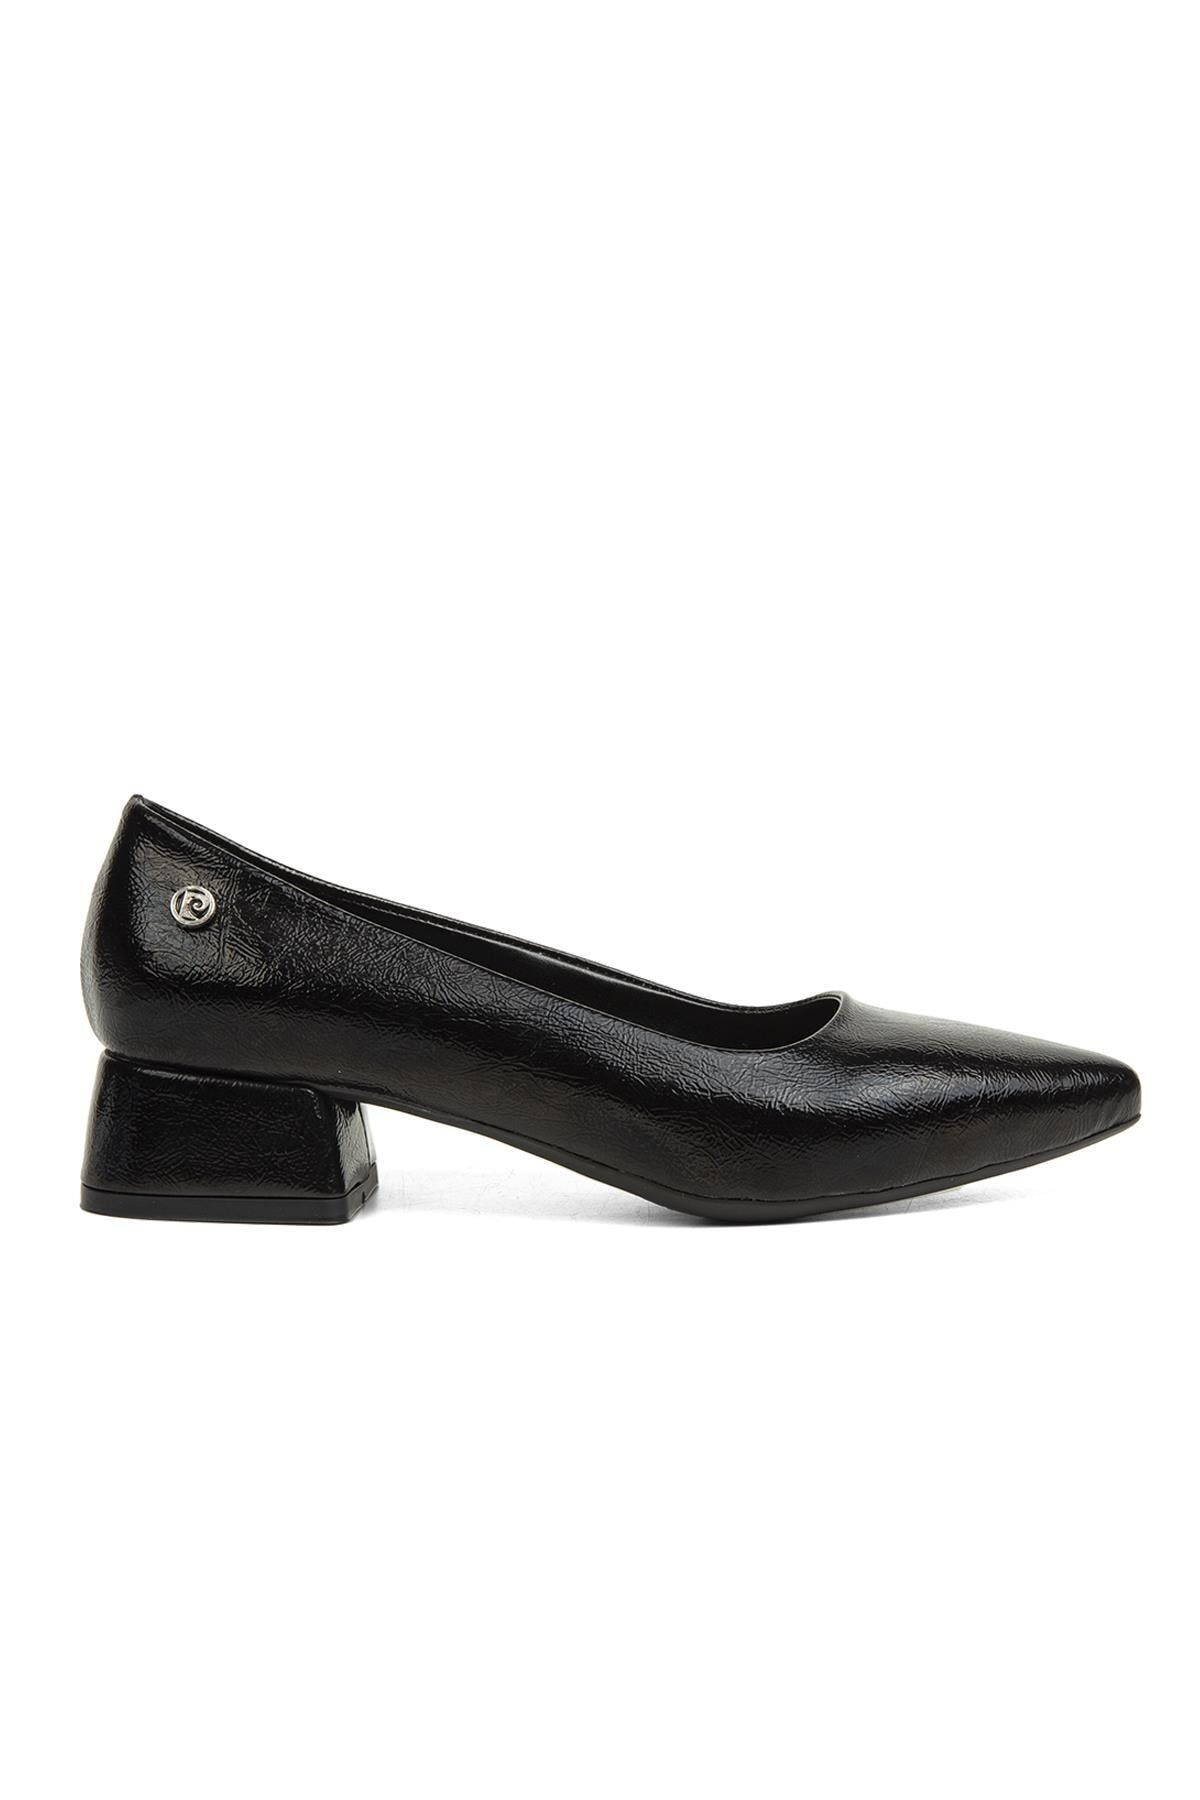 Pierre Cardin ® | Pc-52009-3478 Siyah Kırısık - Kadın Topuklu Ayakkabı